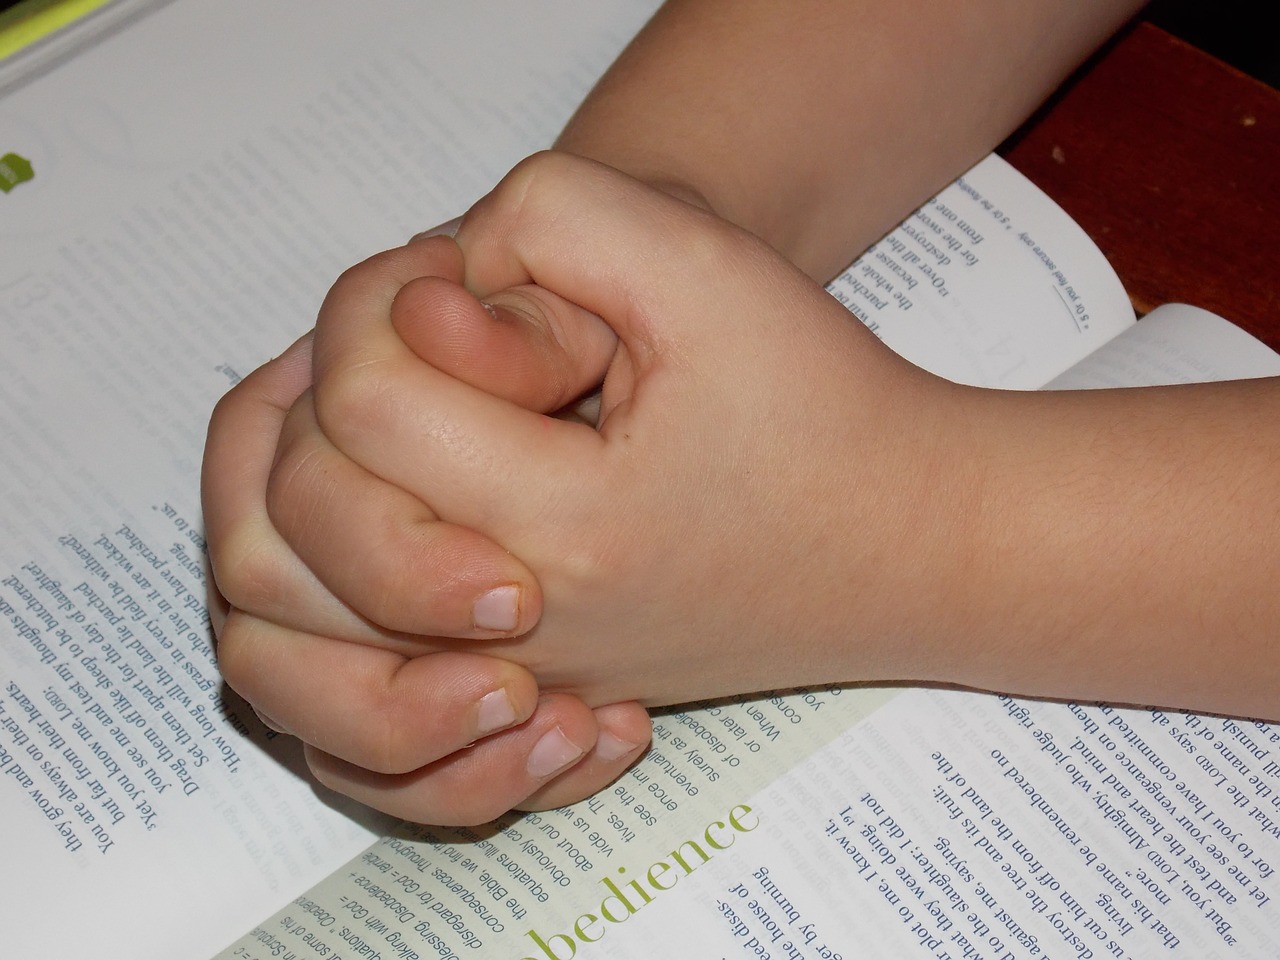 Vaiku Meldžiasi Rankas, Biblija, Melstis, Viltis, Tikėjimas, Krikščionybė, Asmuo, Jaunas, Tikėk, Meilė